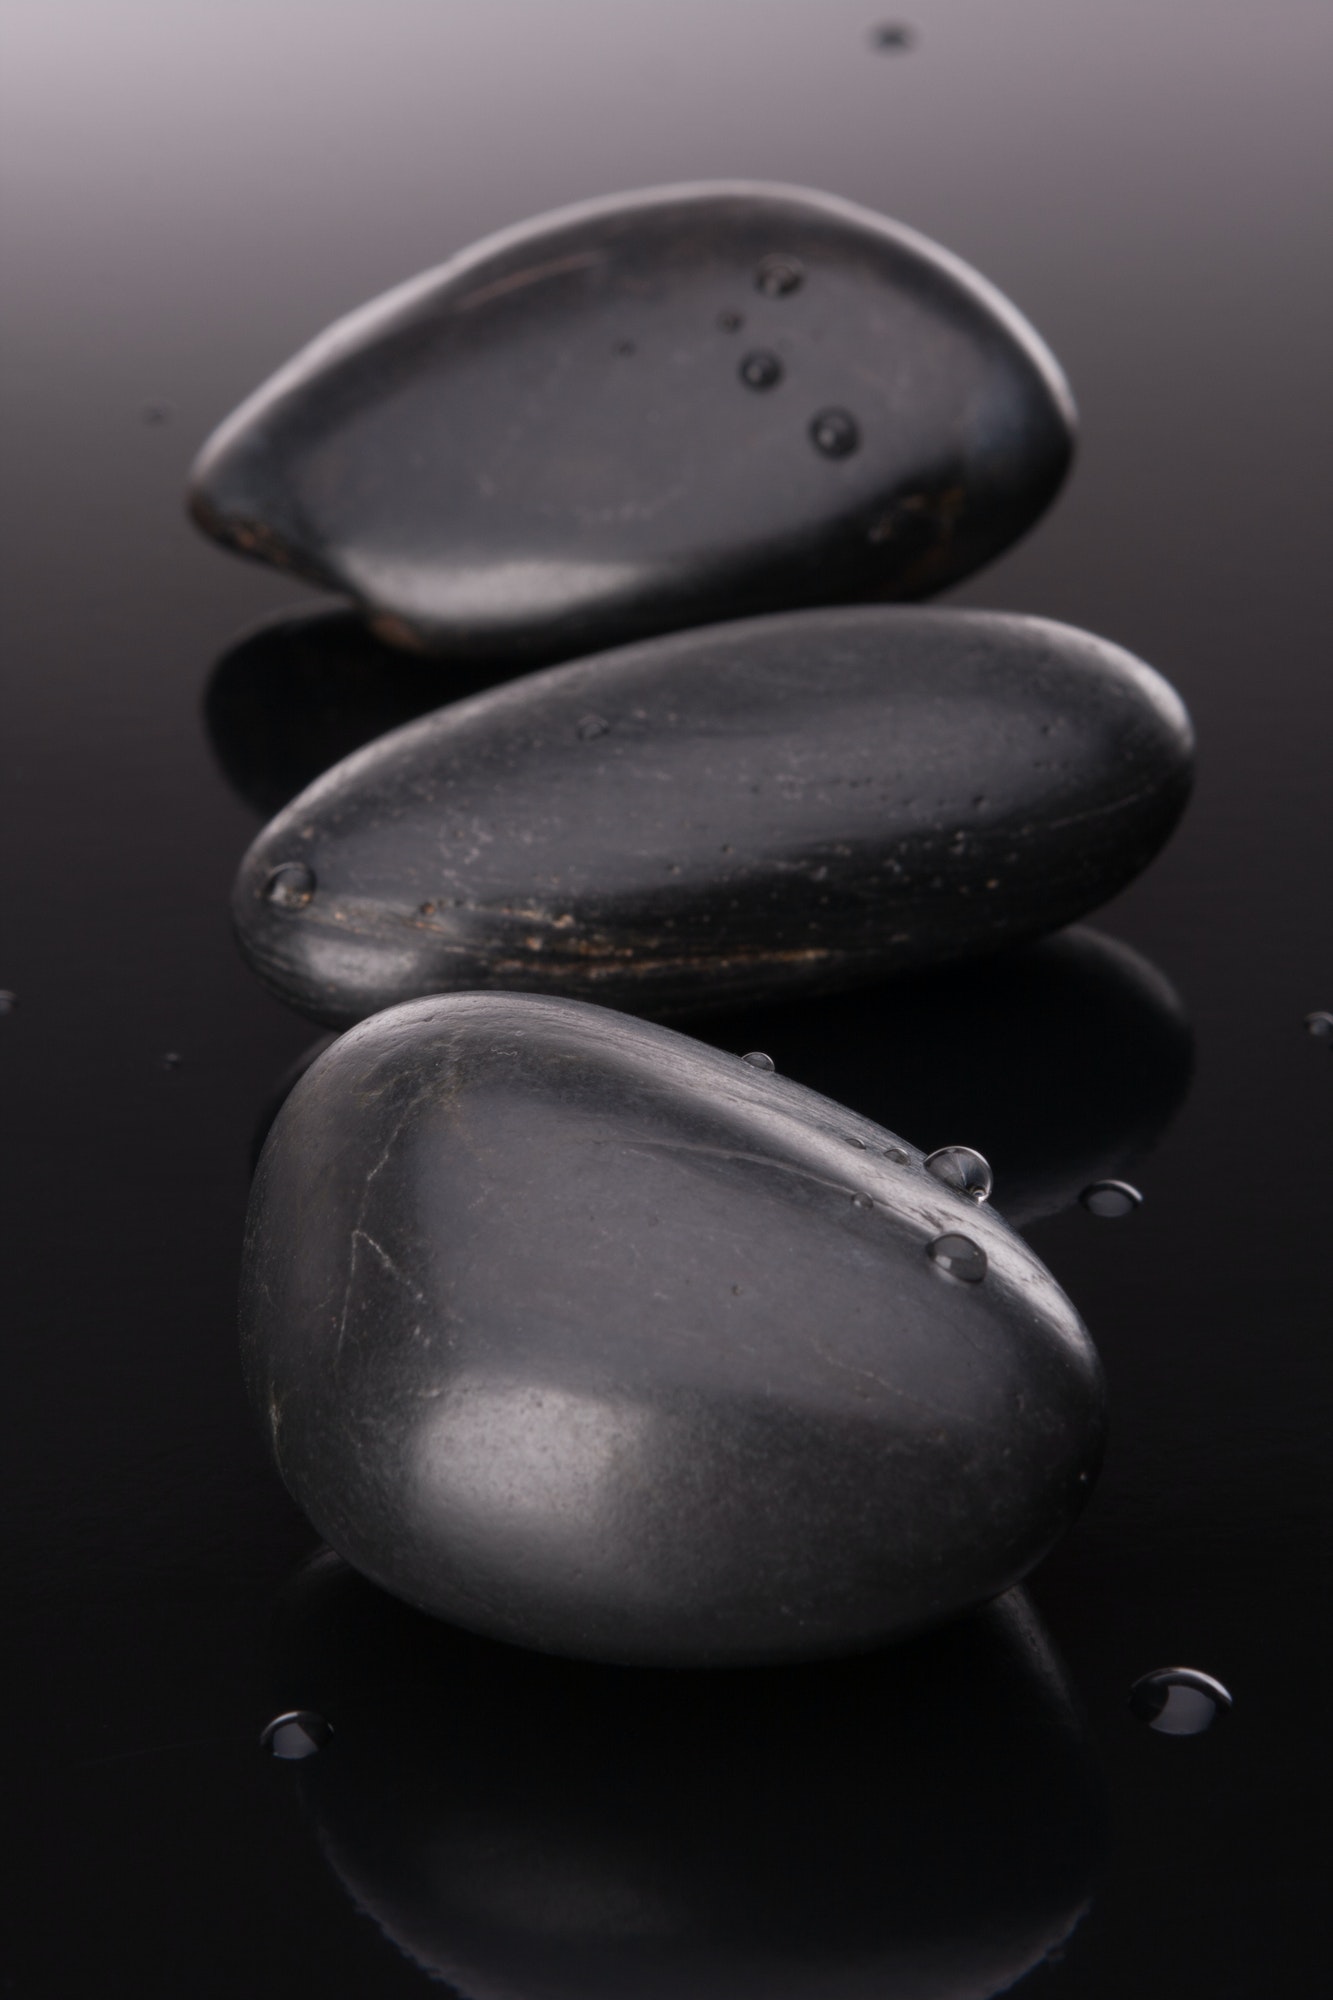 Spa stone arrangement on black surface. Healthcare concept.